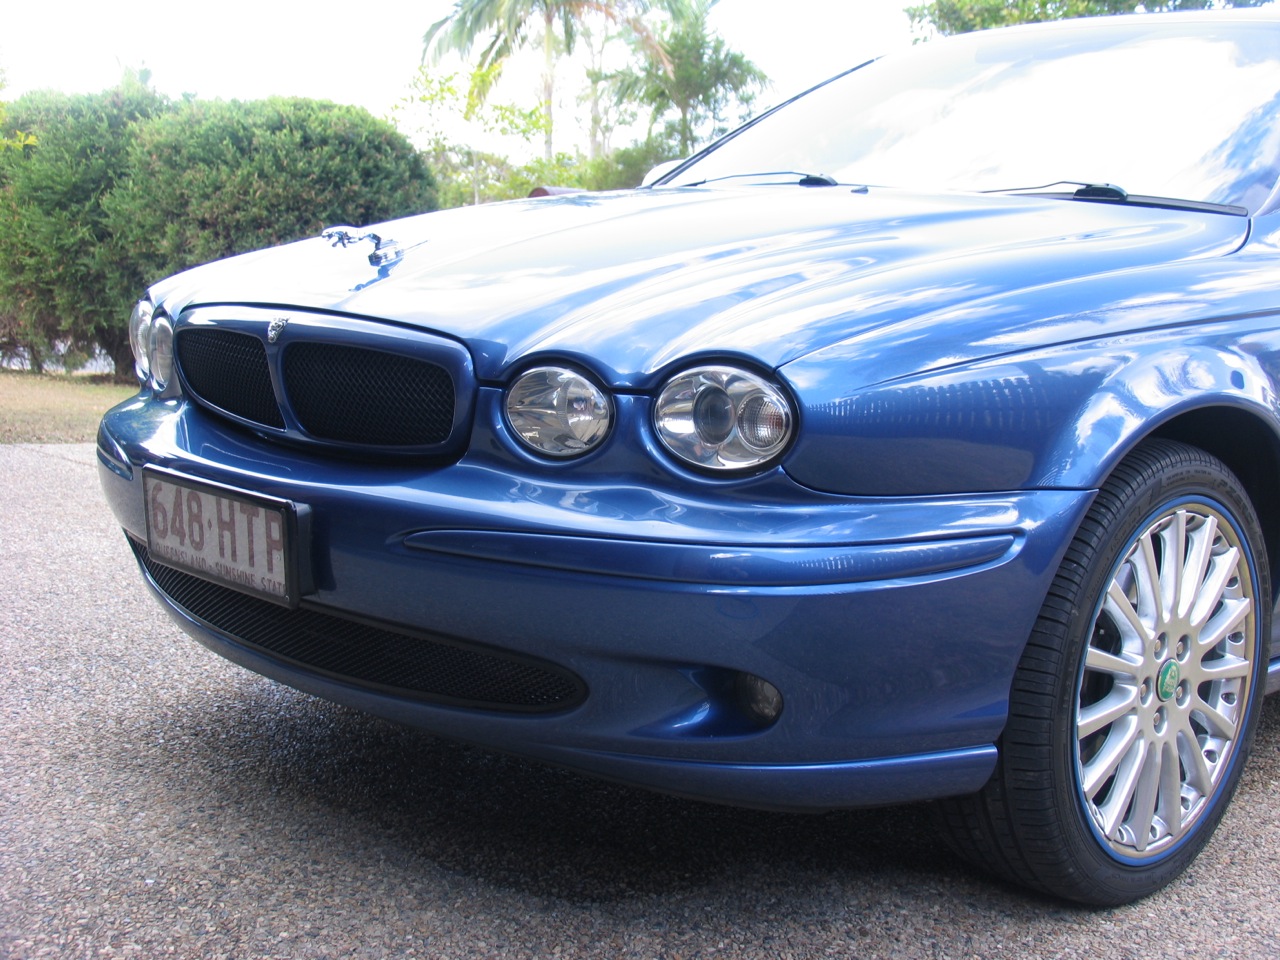 GTR badge on back of 2002 jaguar x-type? - Jaguar Forums ...